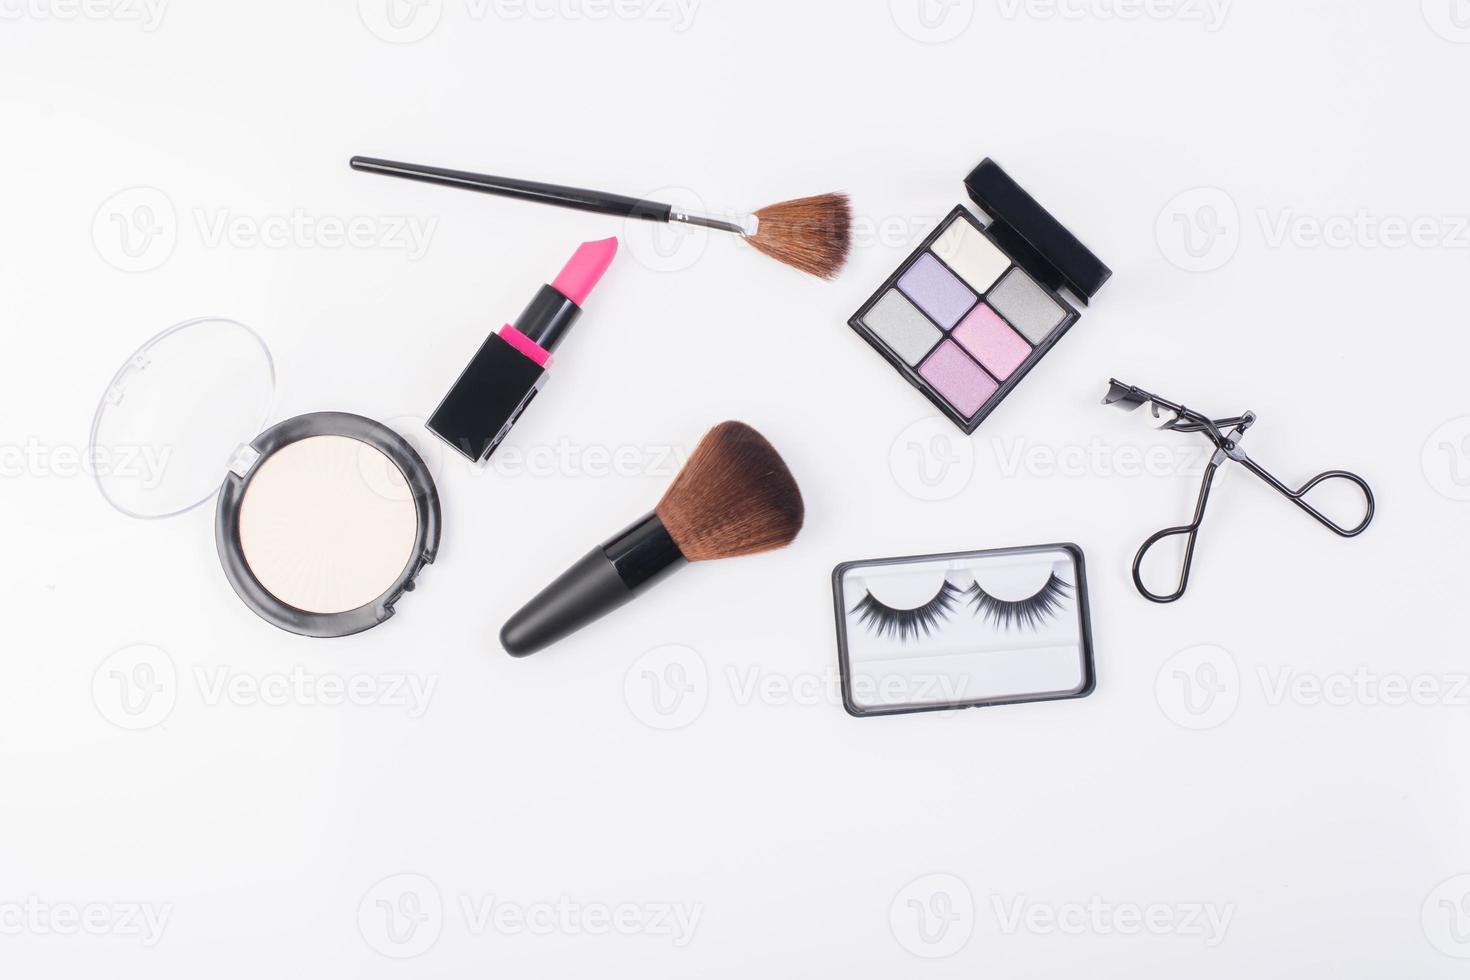 vista superior de uma coleção de produtos cosméticos de beleza foto